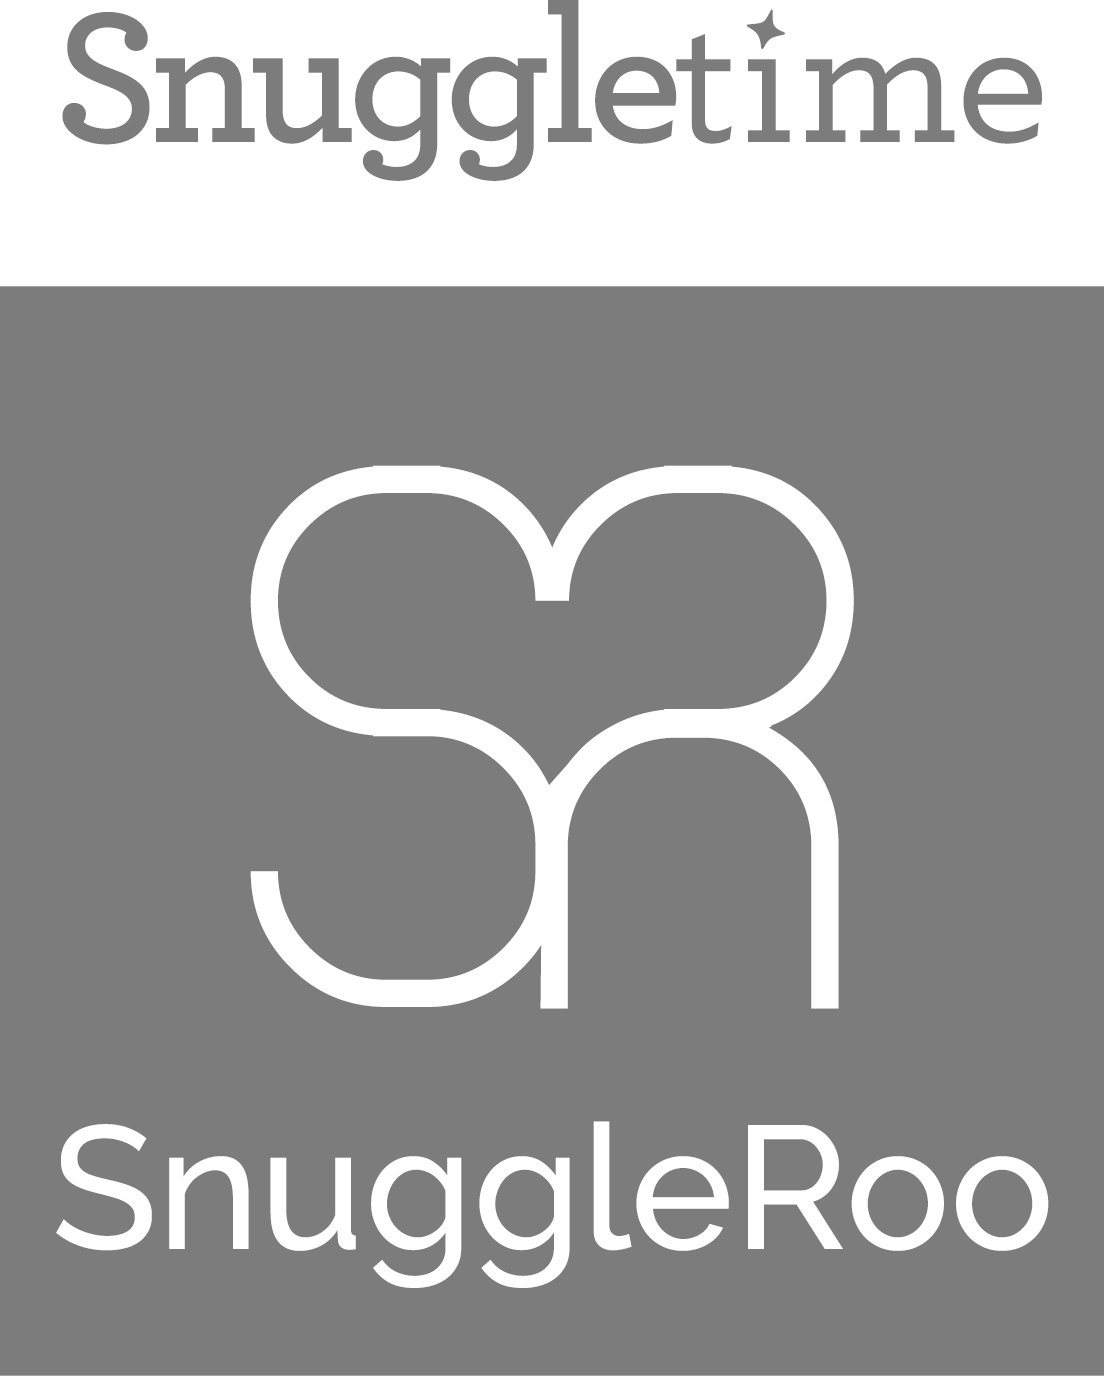 SnuggleRoo final logo-WHITE SR